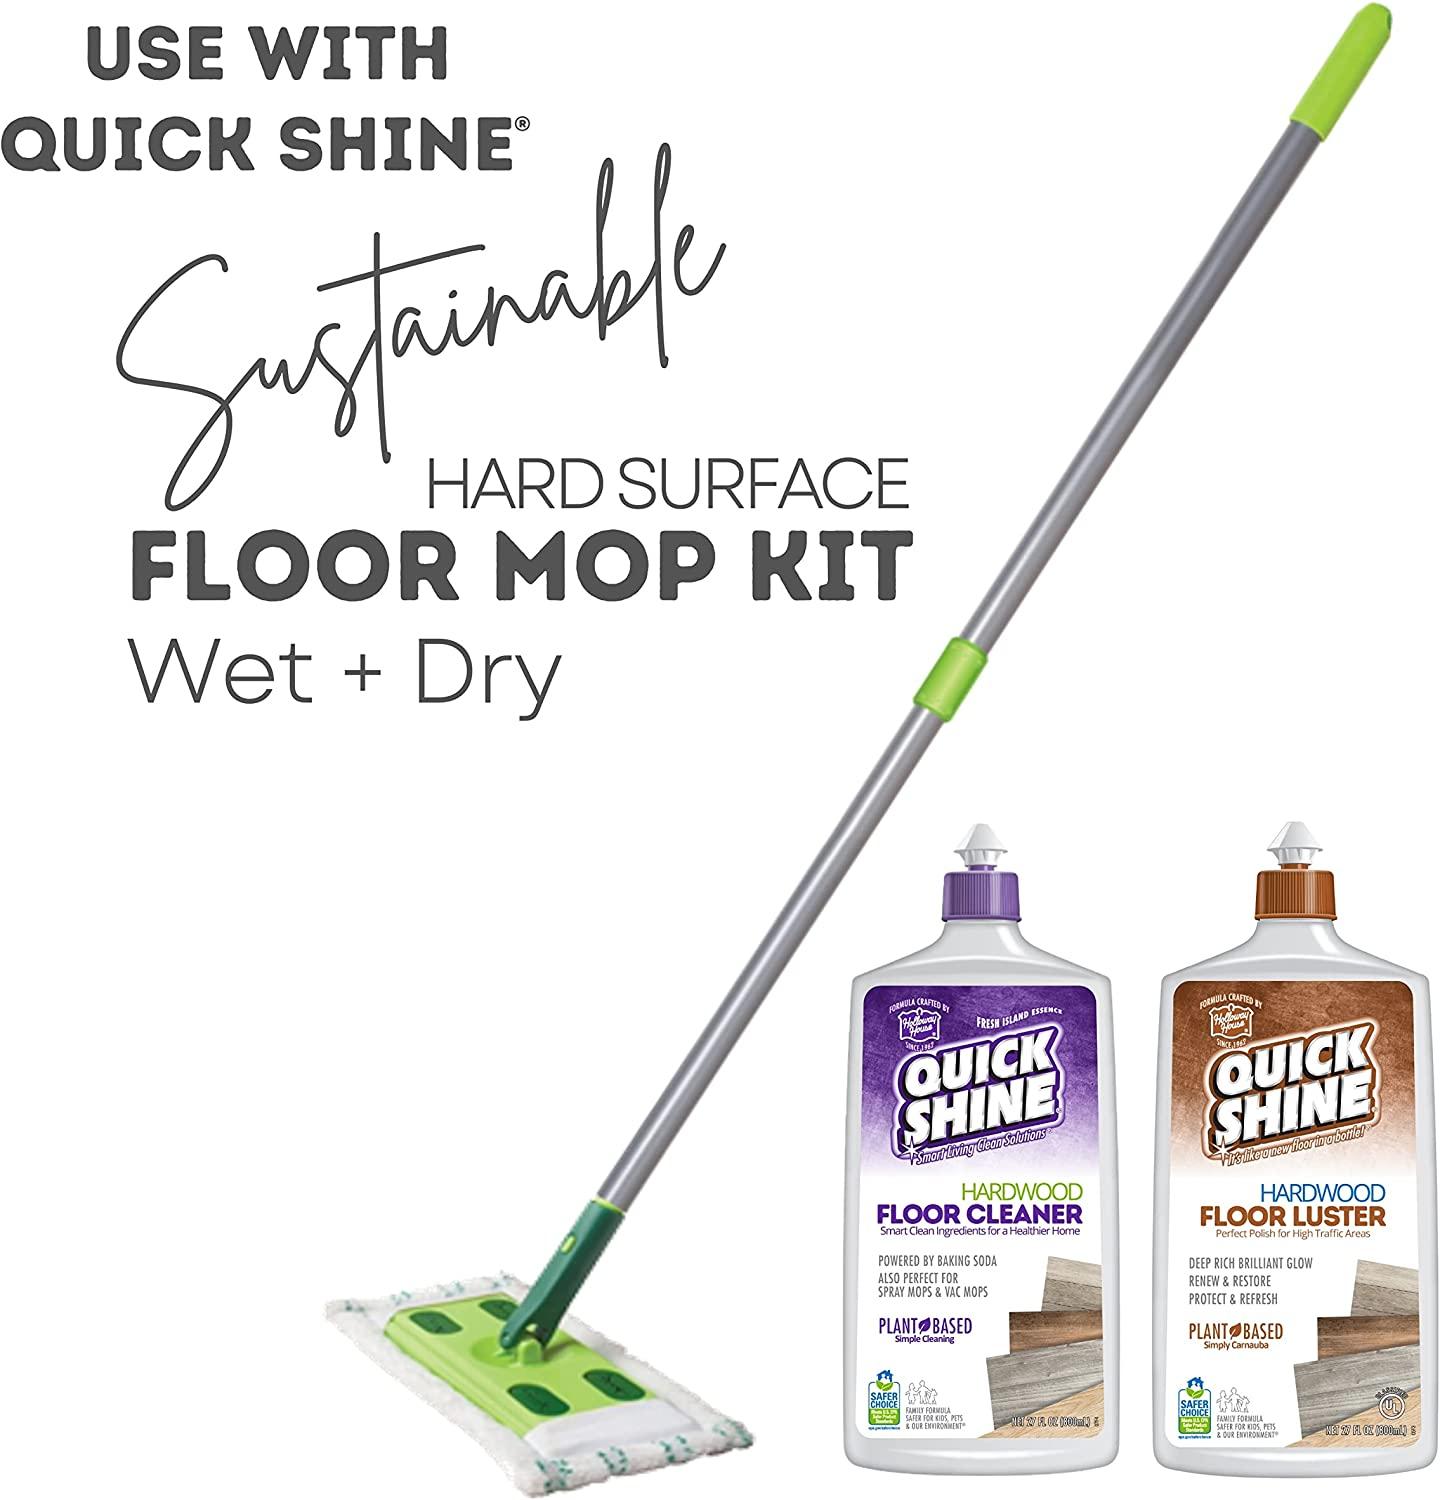 Quick Shine 2 Pack Smart Combo- Includes 1 Hardwood Floor Cleaner